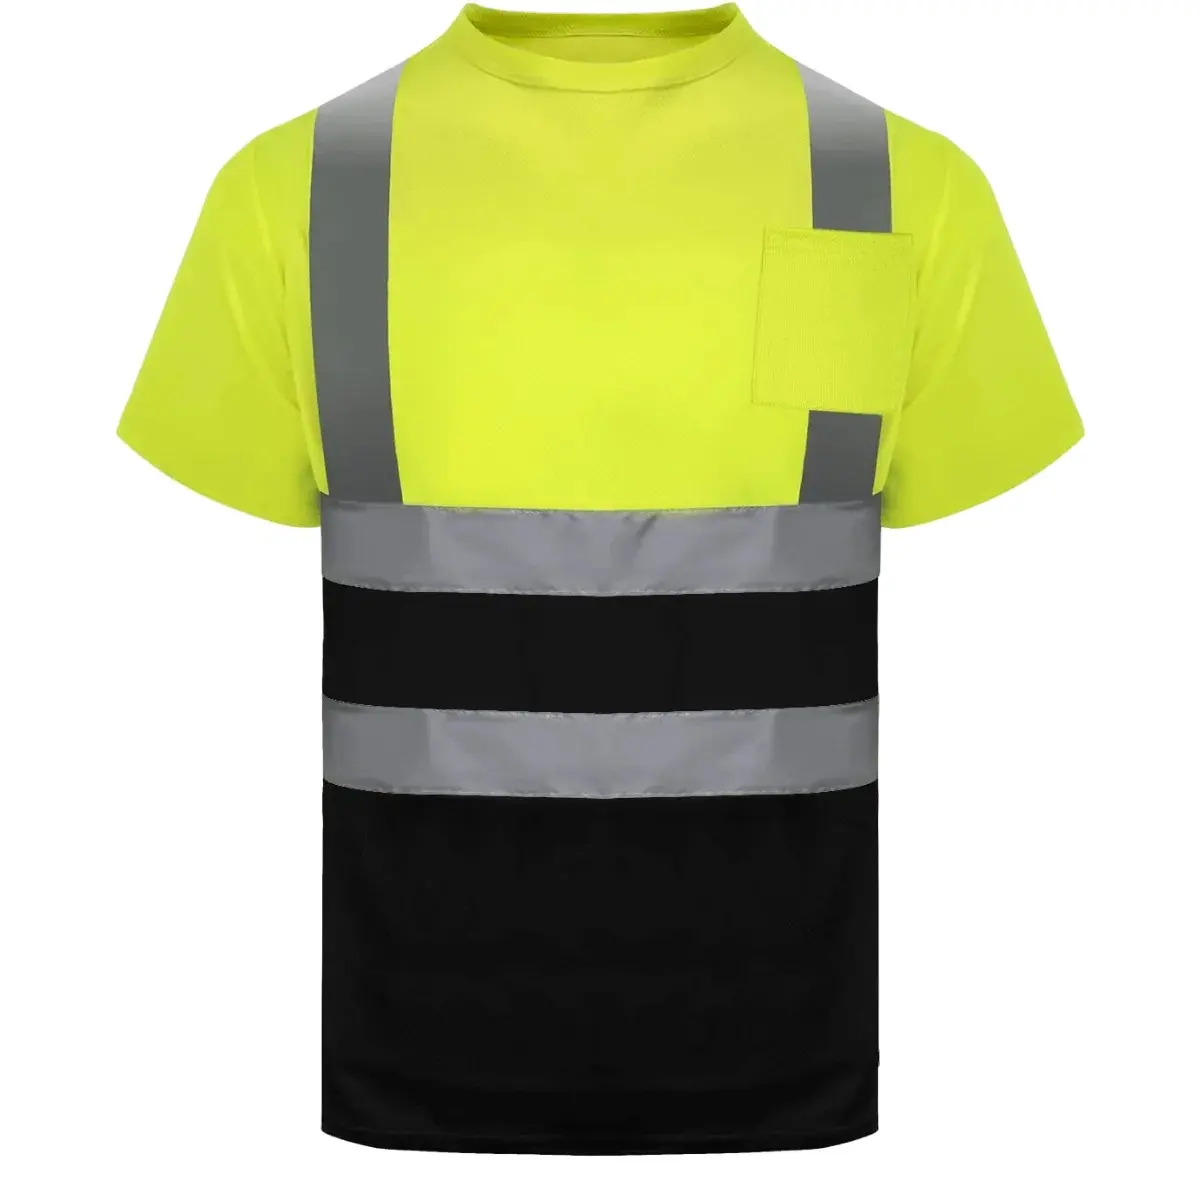 Kaus Kerja Pria, Tinggi Vis Viz Reflektif dengan Bagian Bawah Hitam Uniseks Lengan Pendek Visibilitas Tinggi Jaring Keselamatan Kemeja Cepat Kering